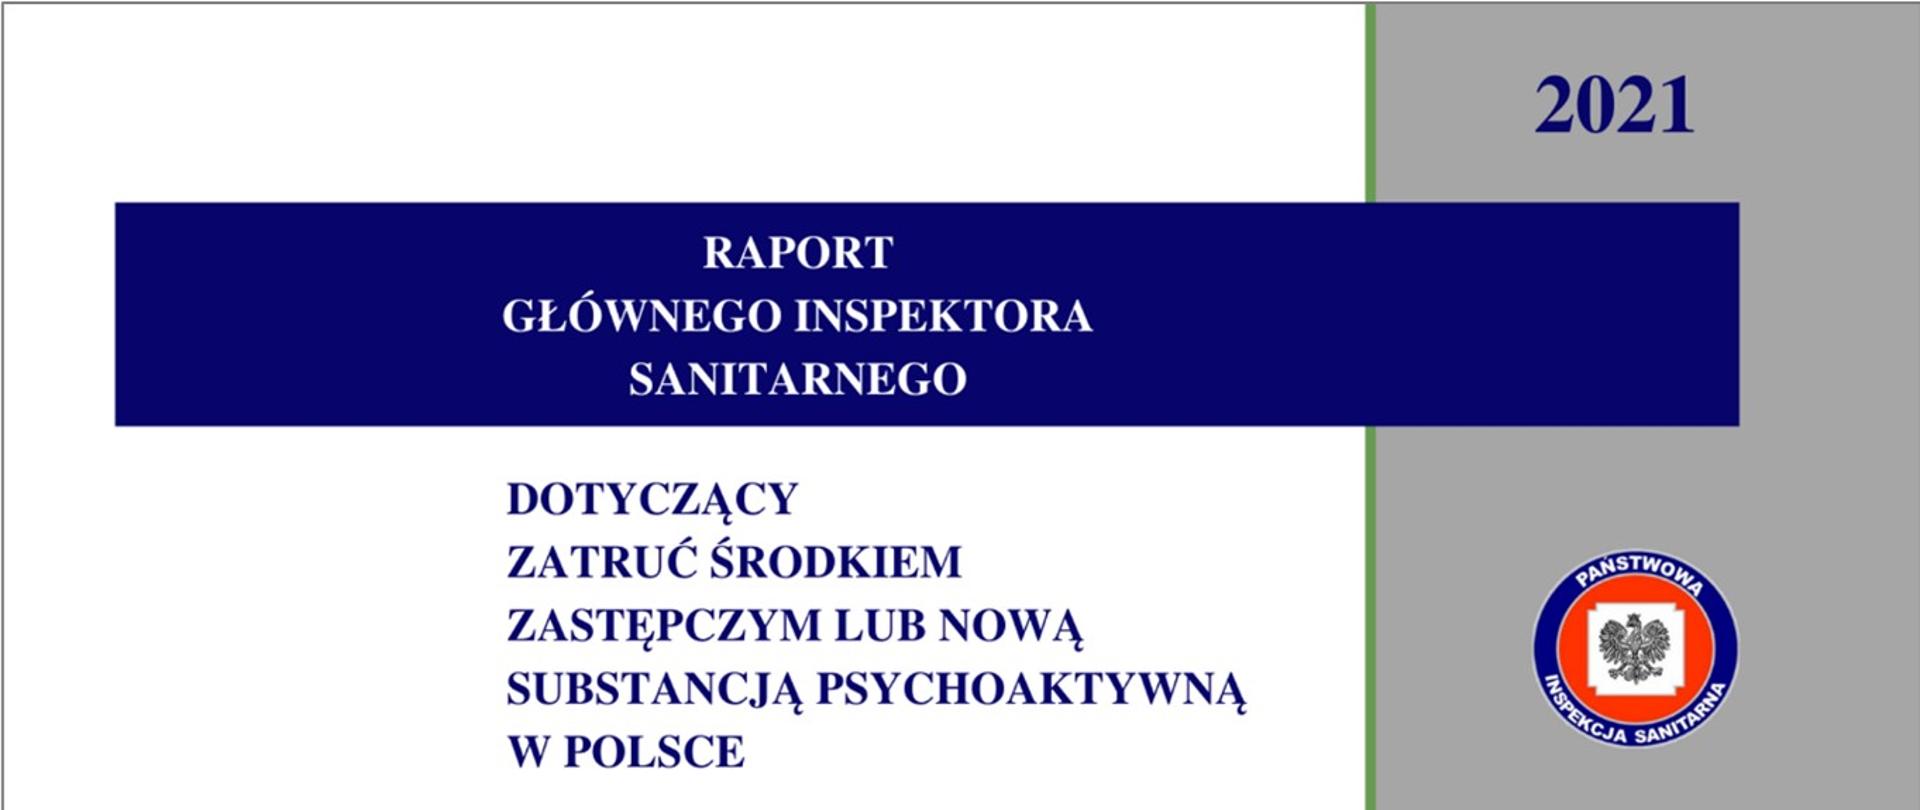 Raport Głównego Inspektora Sanitarnego dotyczący zatruć środkiem zastępczym lub nową substancją psychoaktywną w Polsce za 2021 rok 